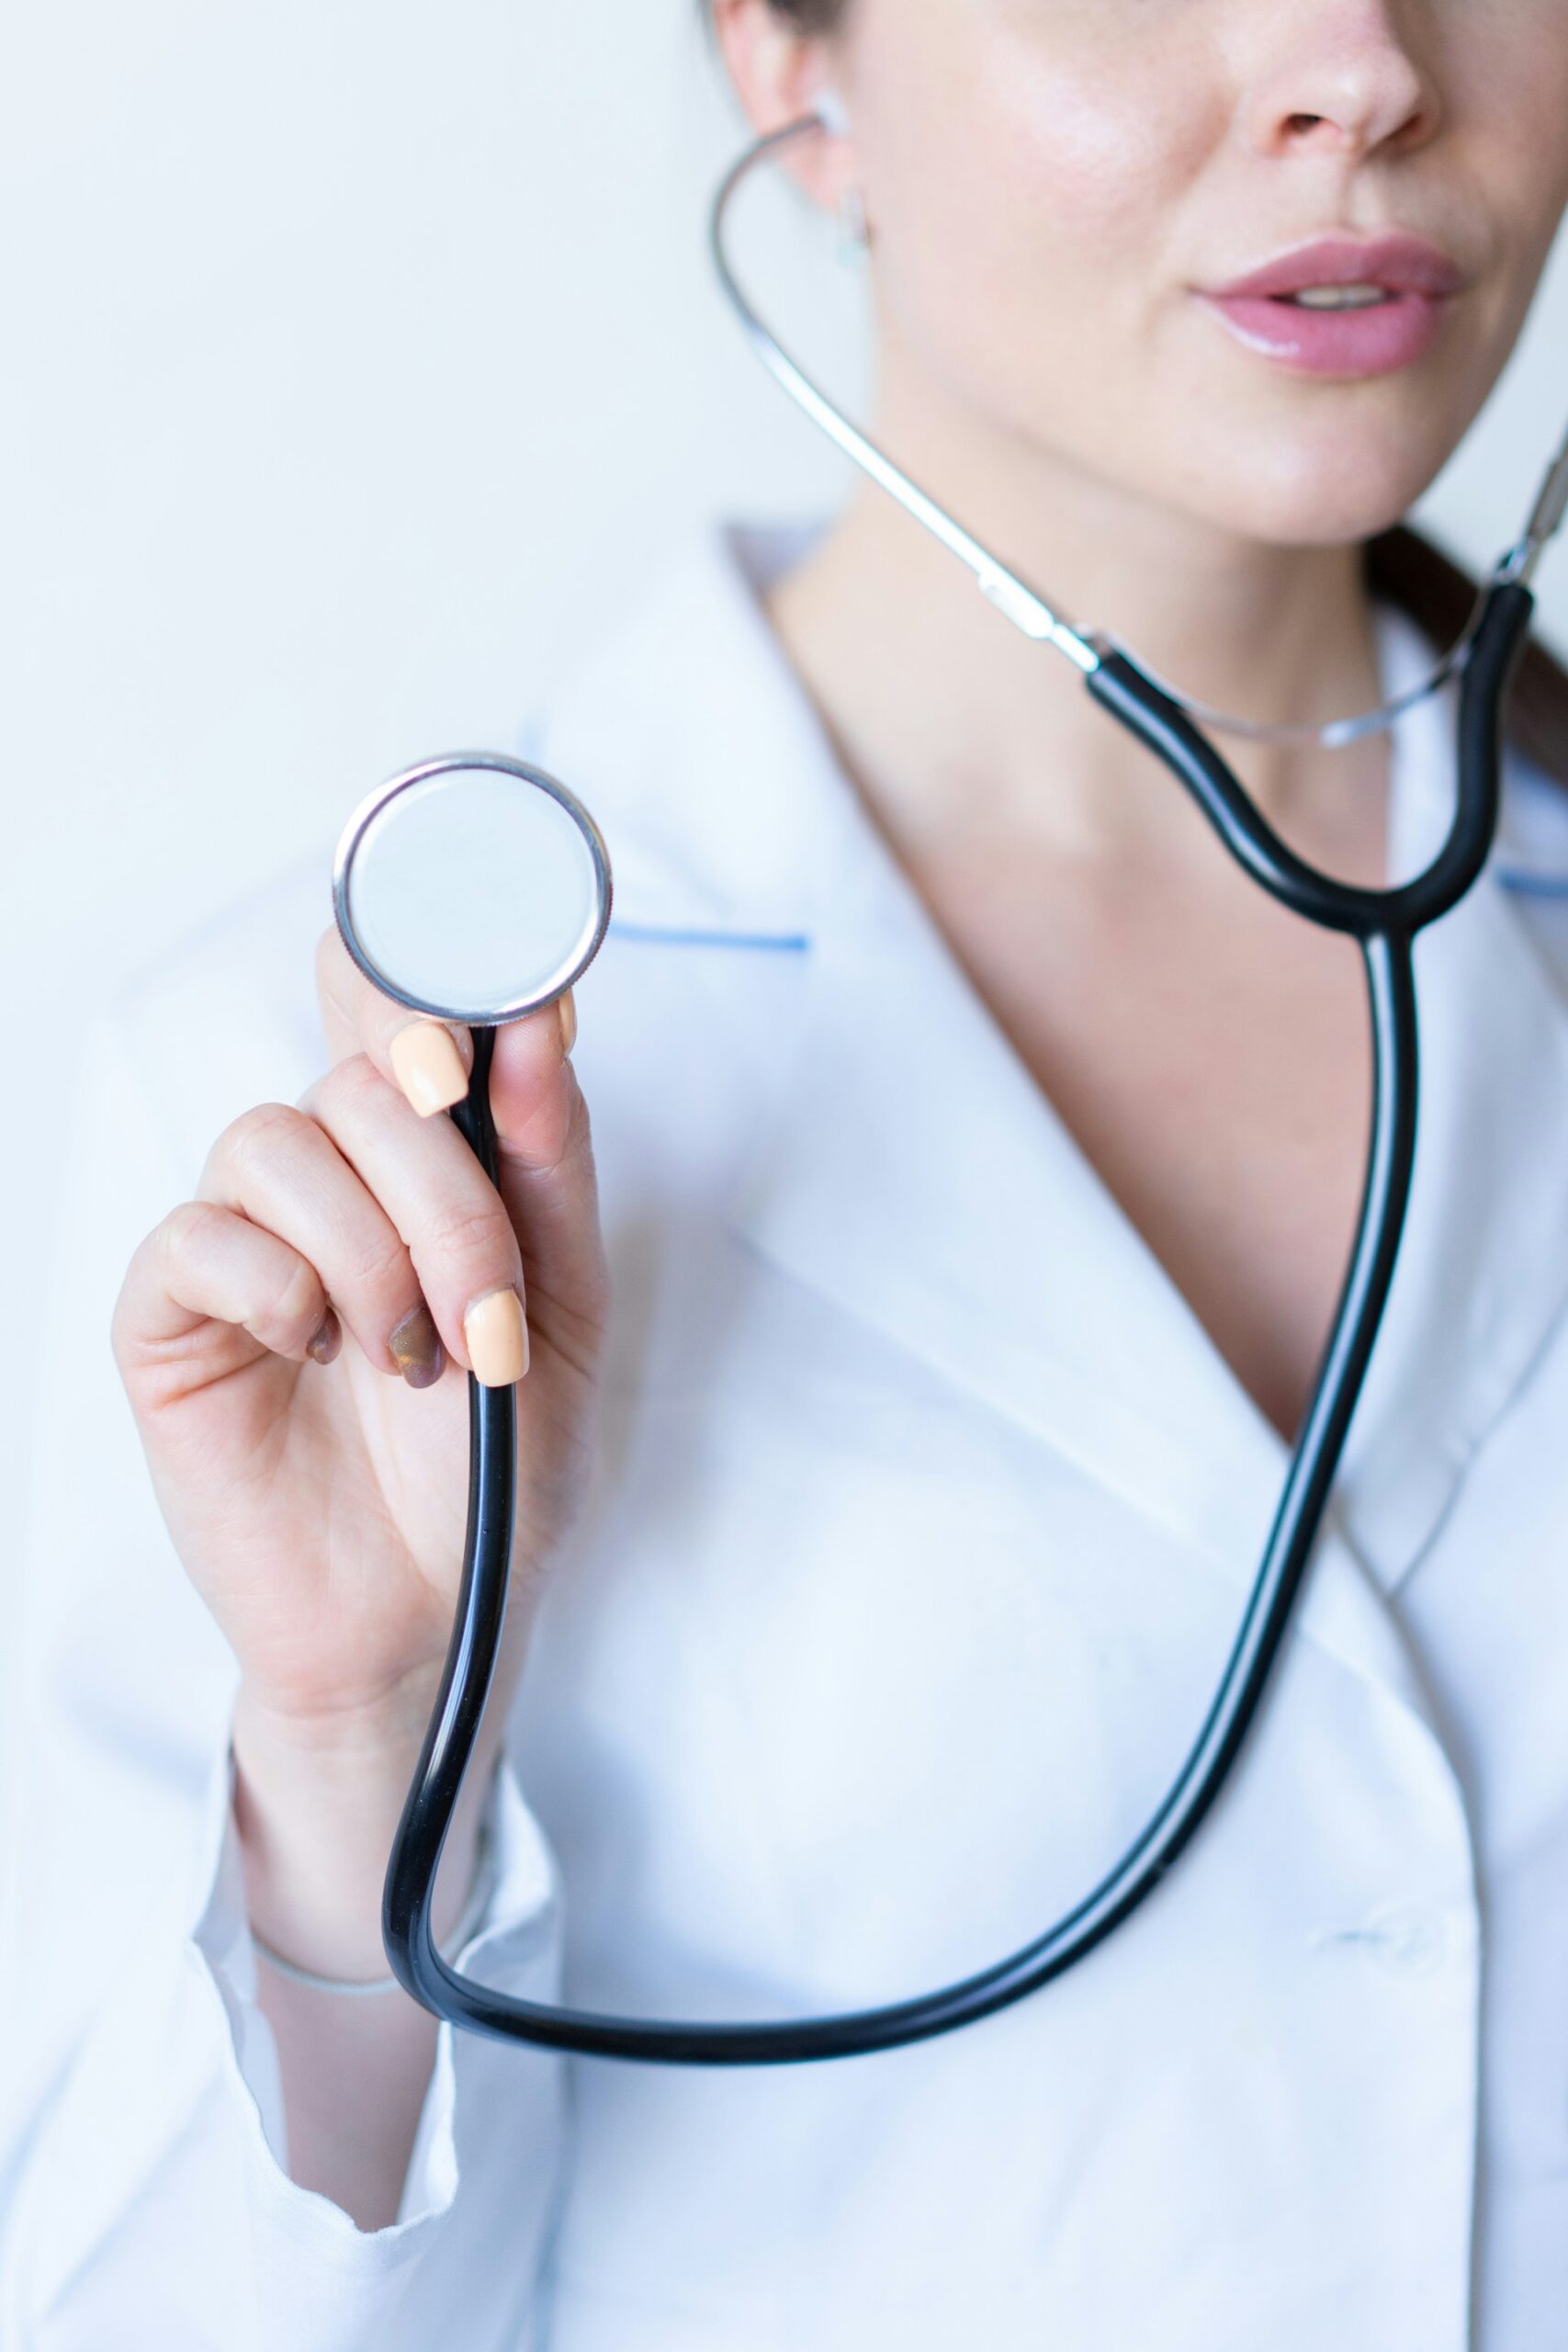 Sygeplejerske praktik – et springbræt til karriereudvikling og personlig vækst